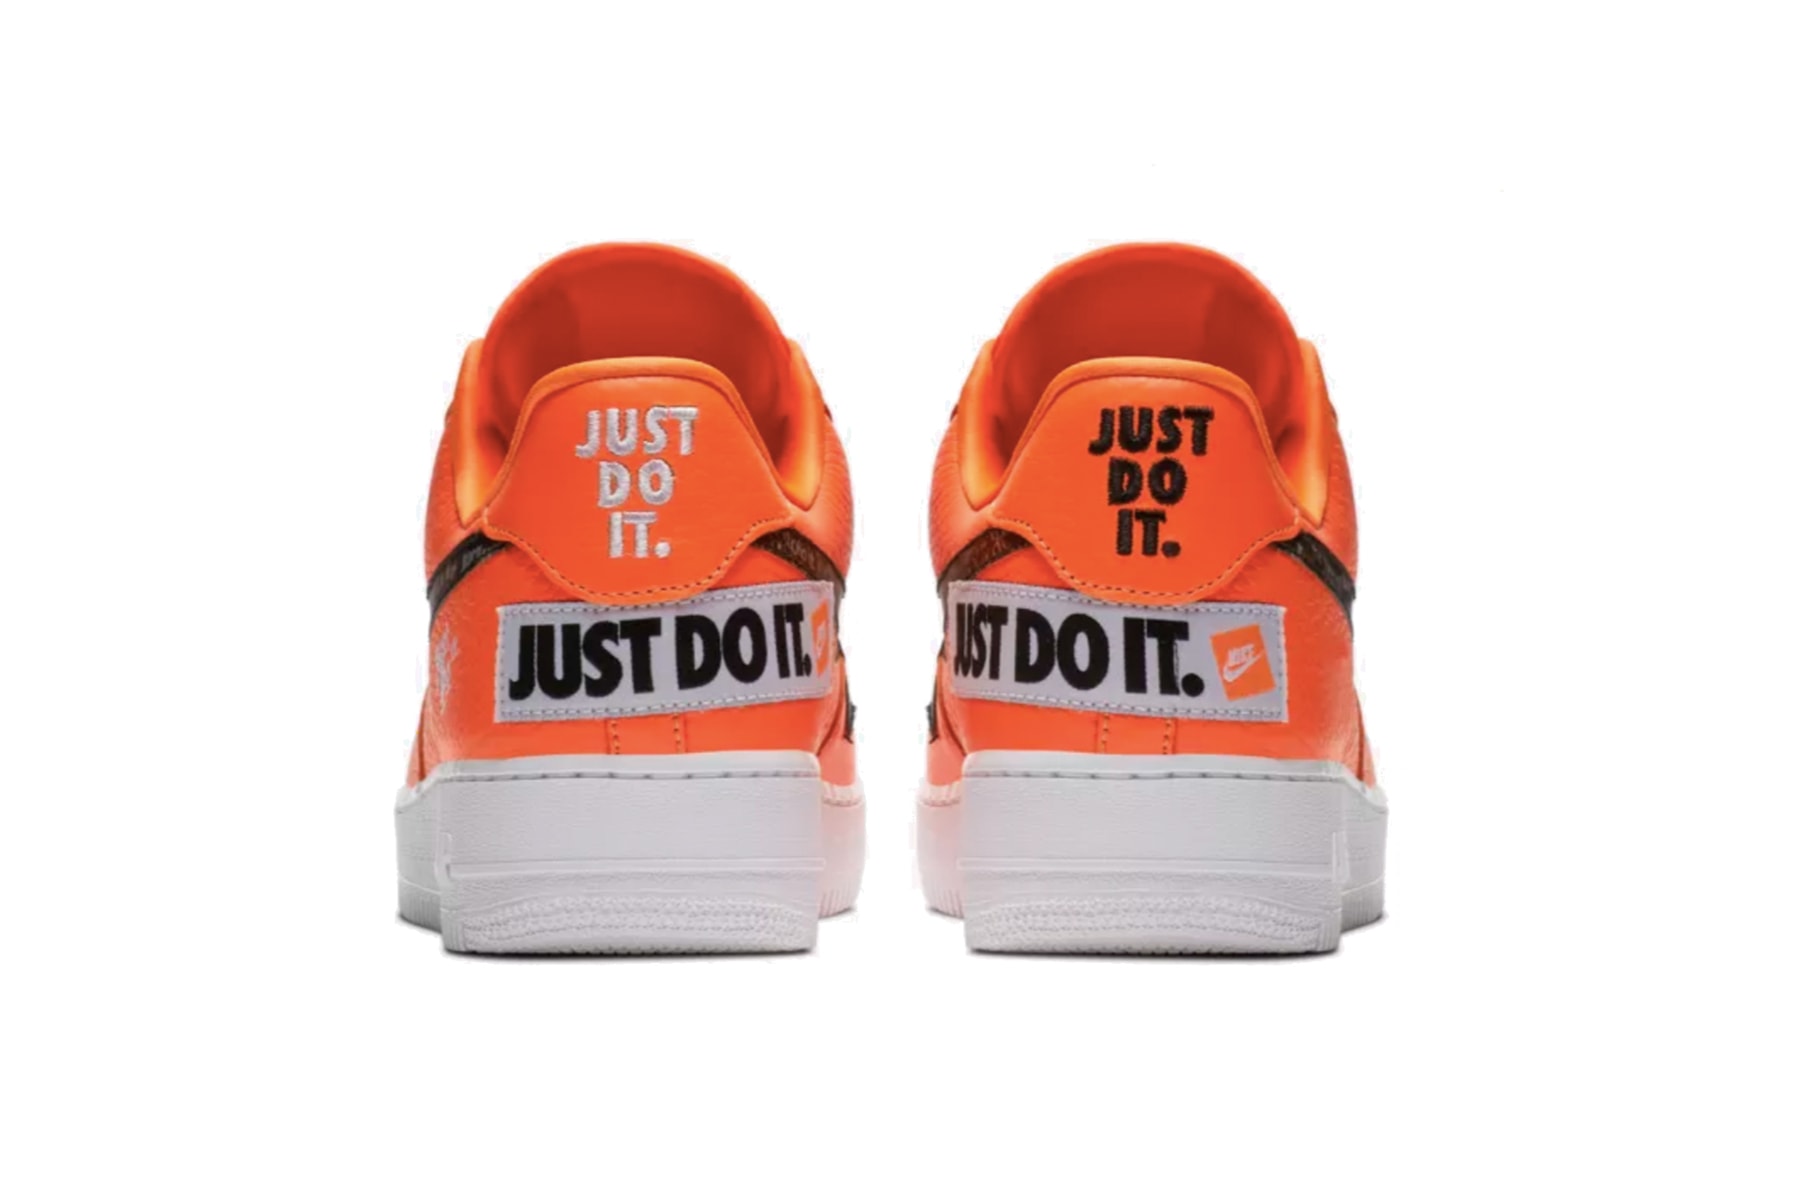  “Just Do It” 誕生30周年を祝した大胆なデザインの Air Force 1 が Nike より発売 ナイキ HYPEBEAST ハイプビースト エア フォース 1